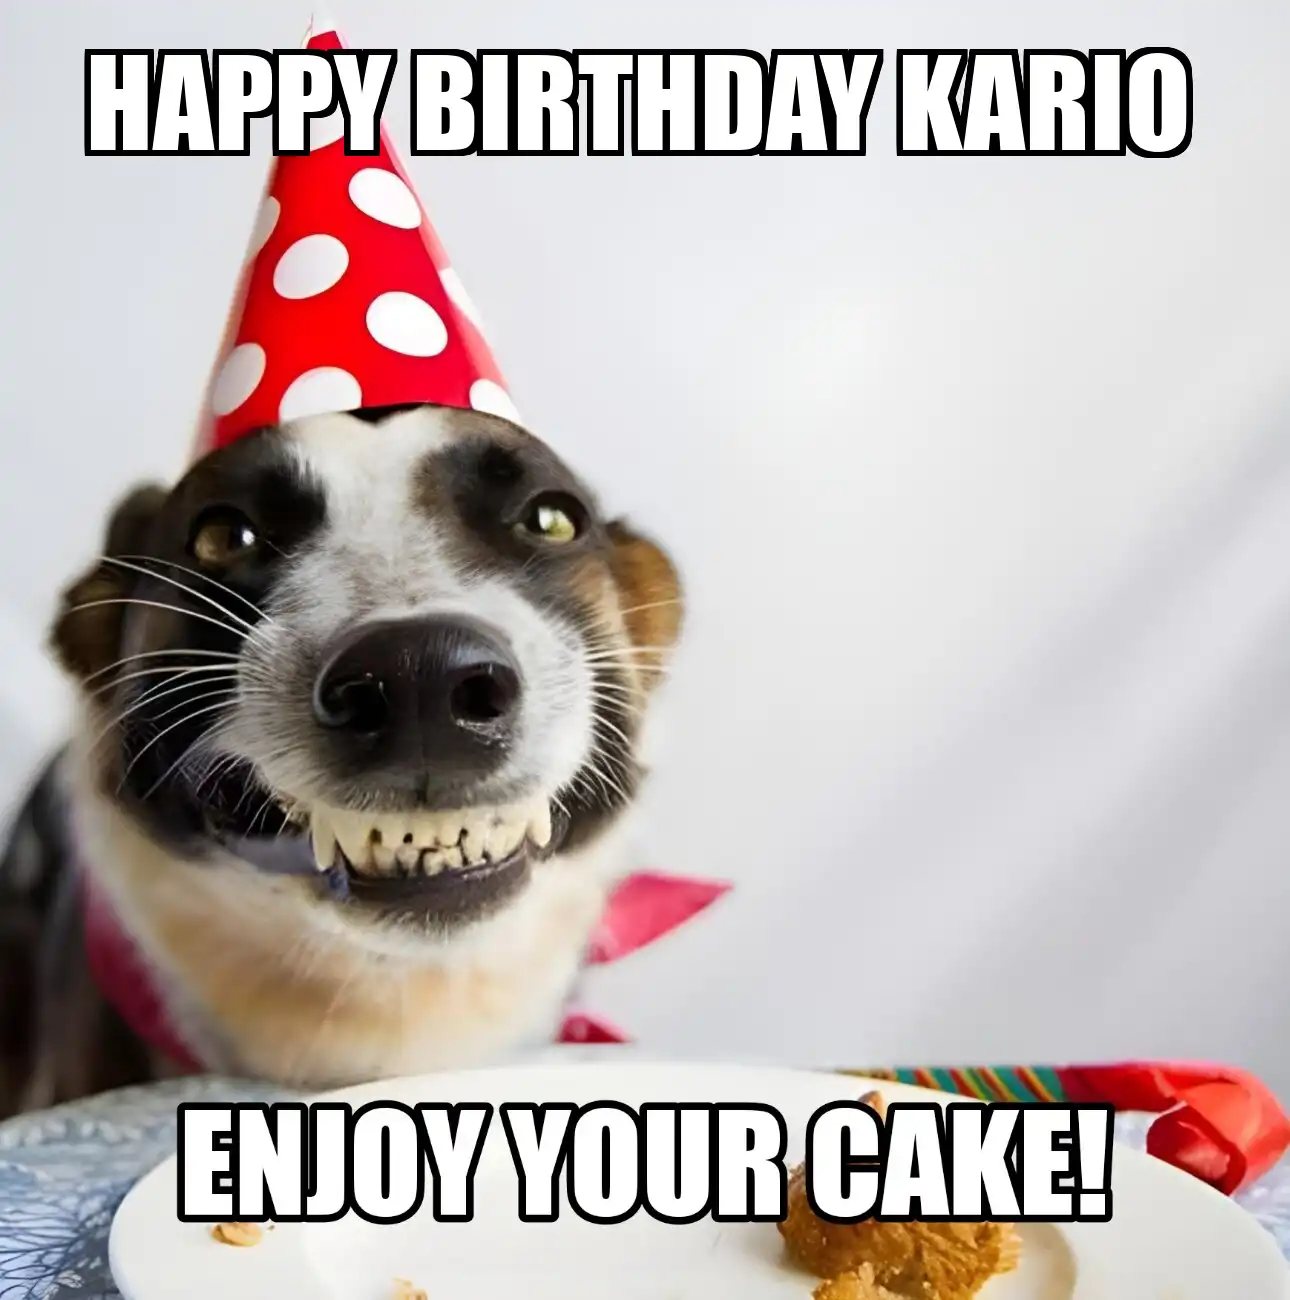 Happy Birthday Kario Enjoy Your Cake Dog Meme